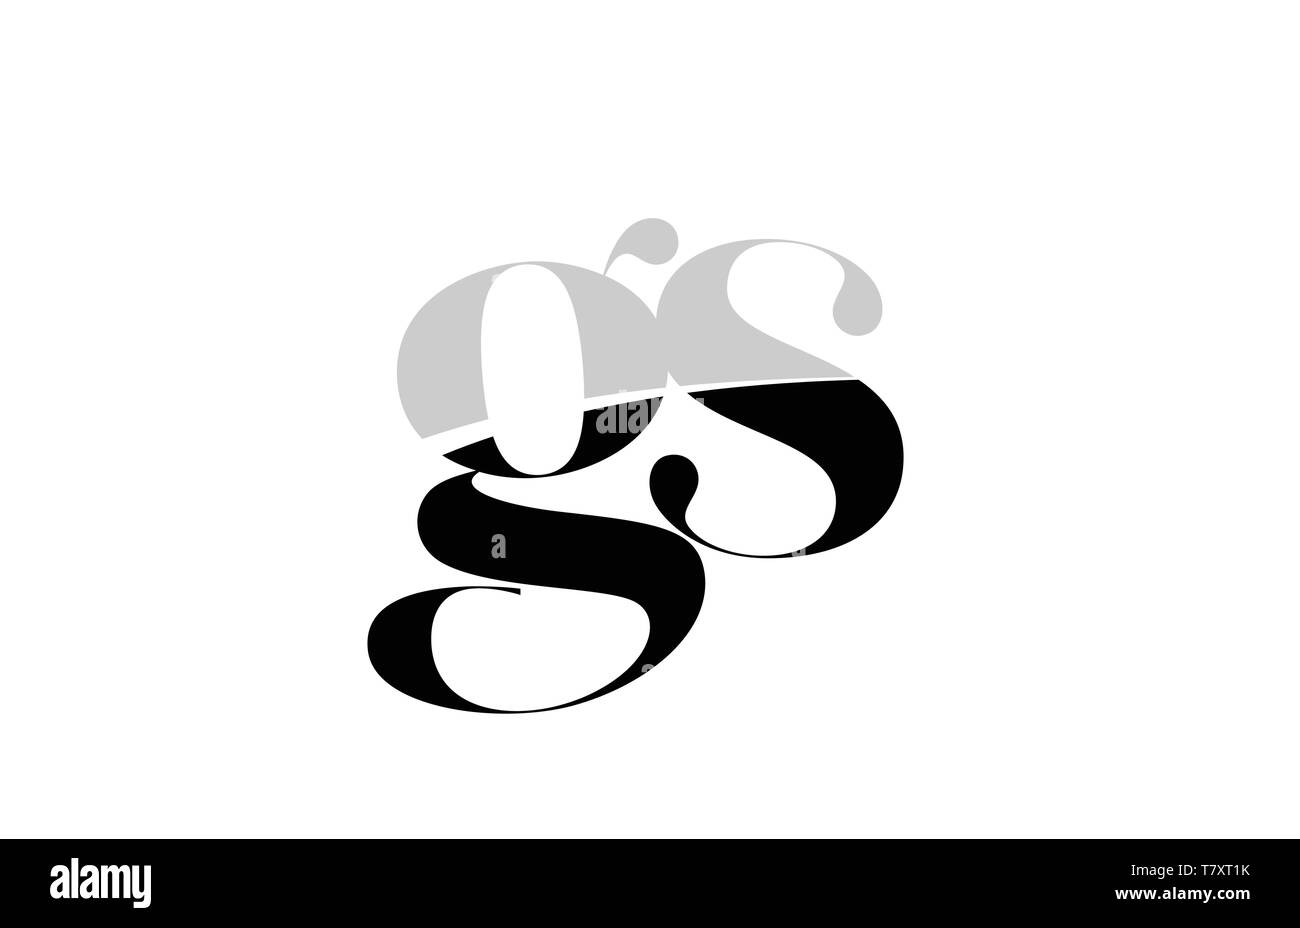 Le noir et blanc lettre de l'alphabet gs g s'icône logo design pour une société ou entreprise Illustration de Vecteur